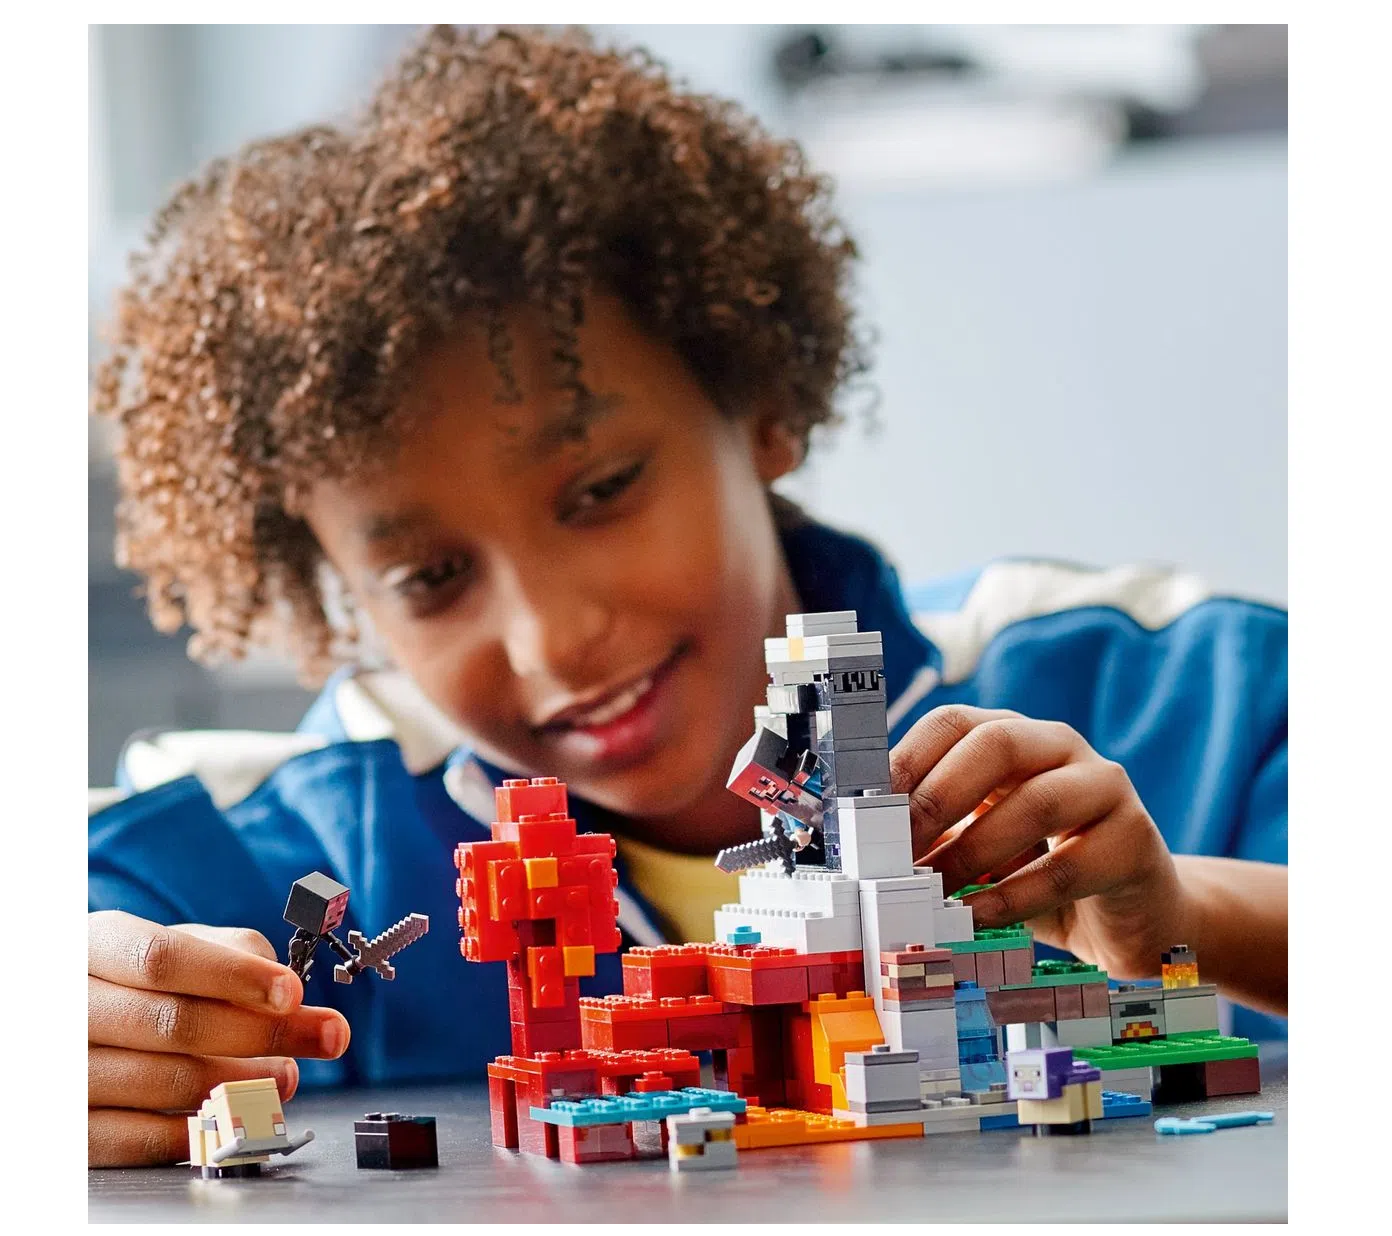 O Portal em Ruínas Lego Minecraft - Fátima Criança